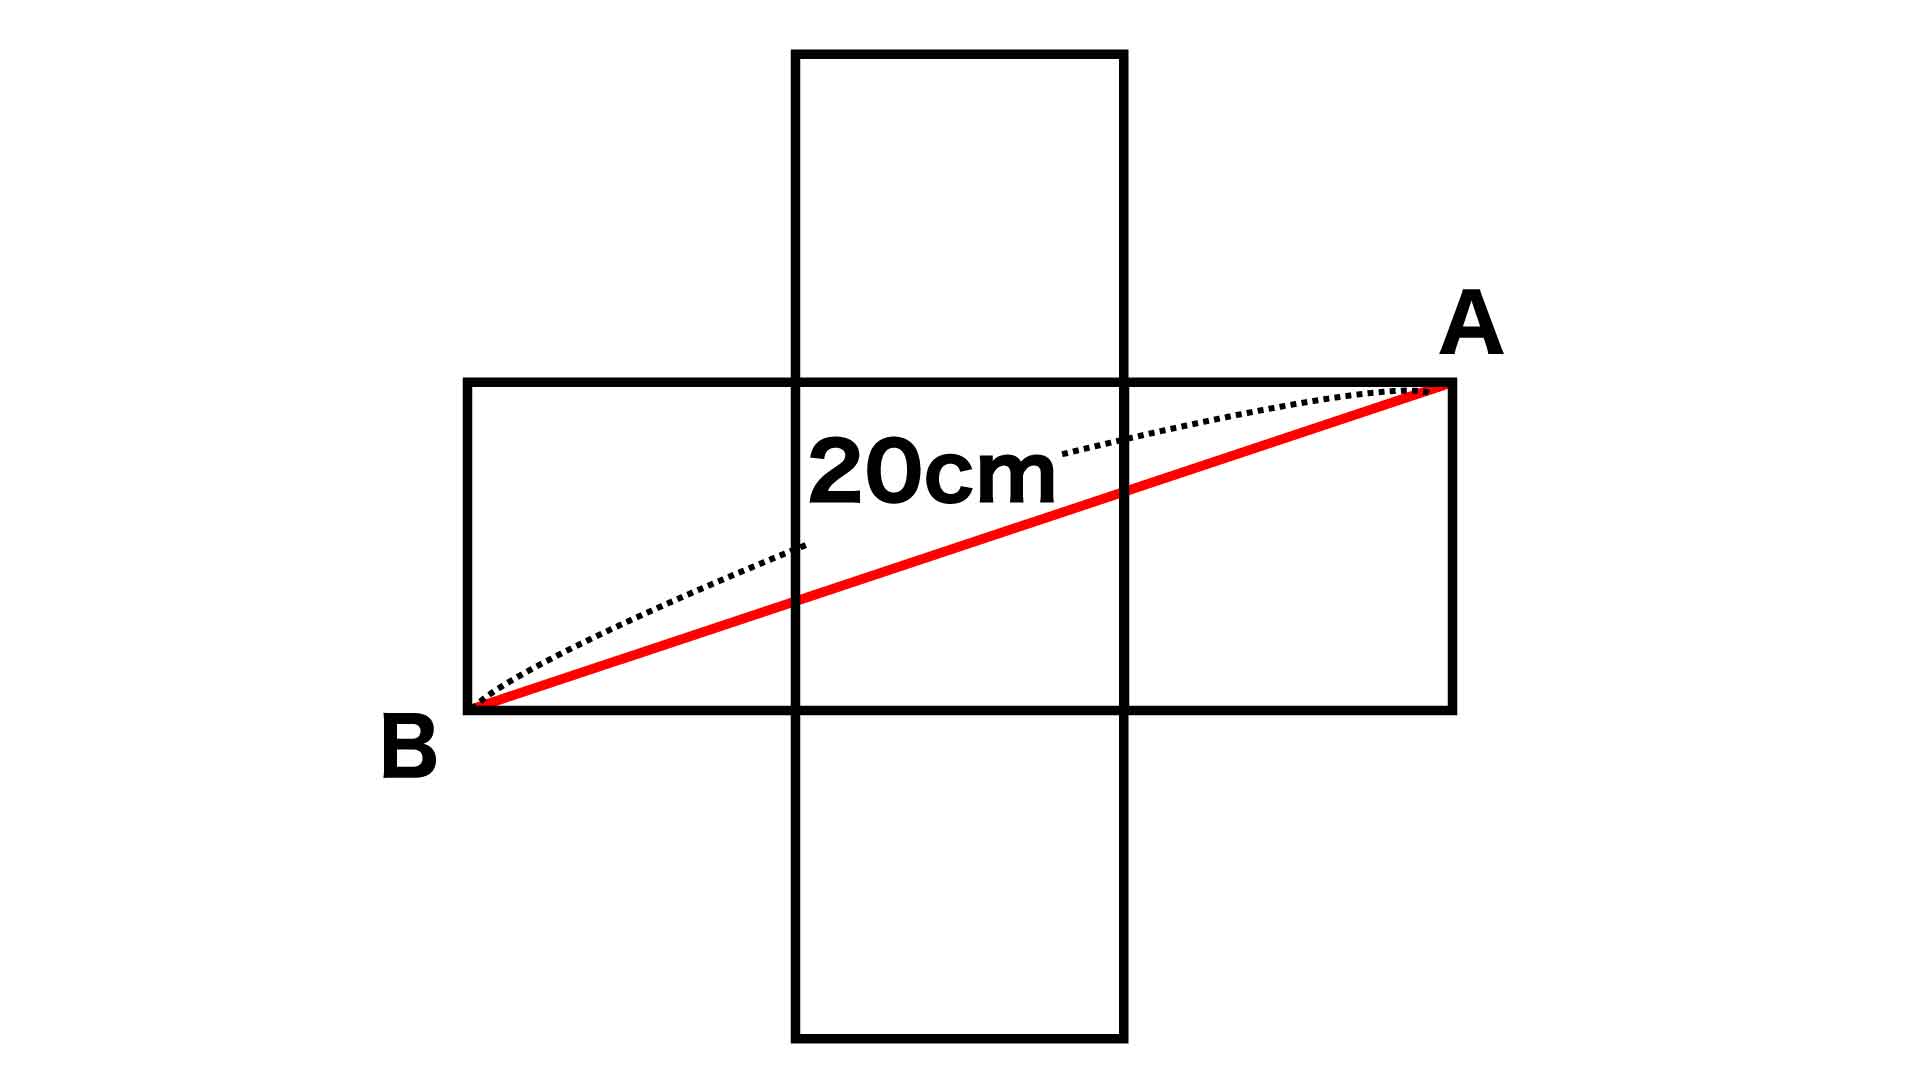 正方形の面積をひらめきで導け 小学5年生レベルの算数クイズに挑戦